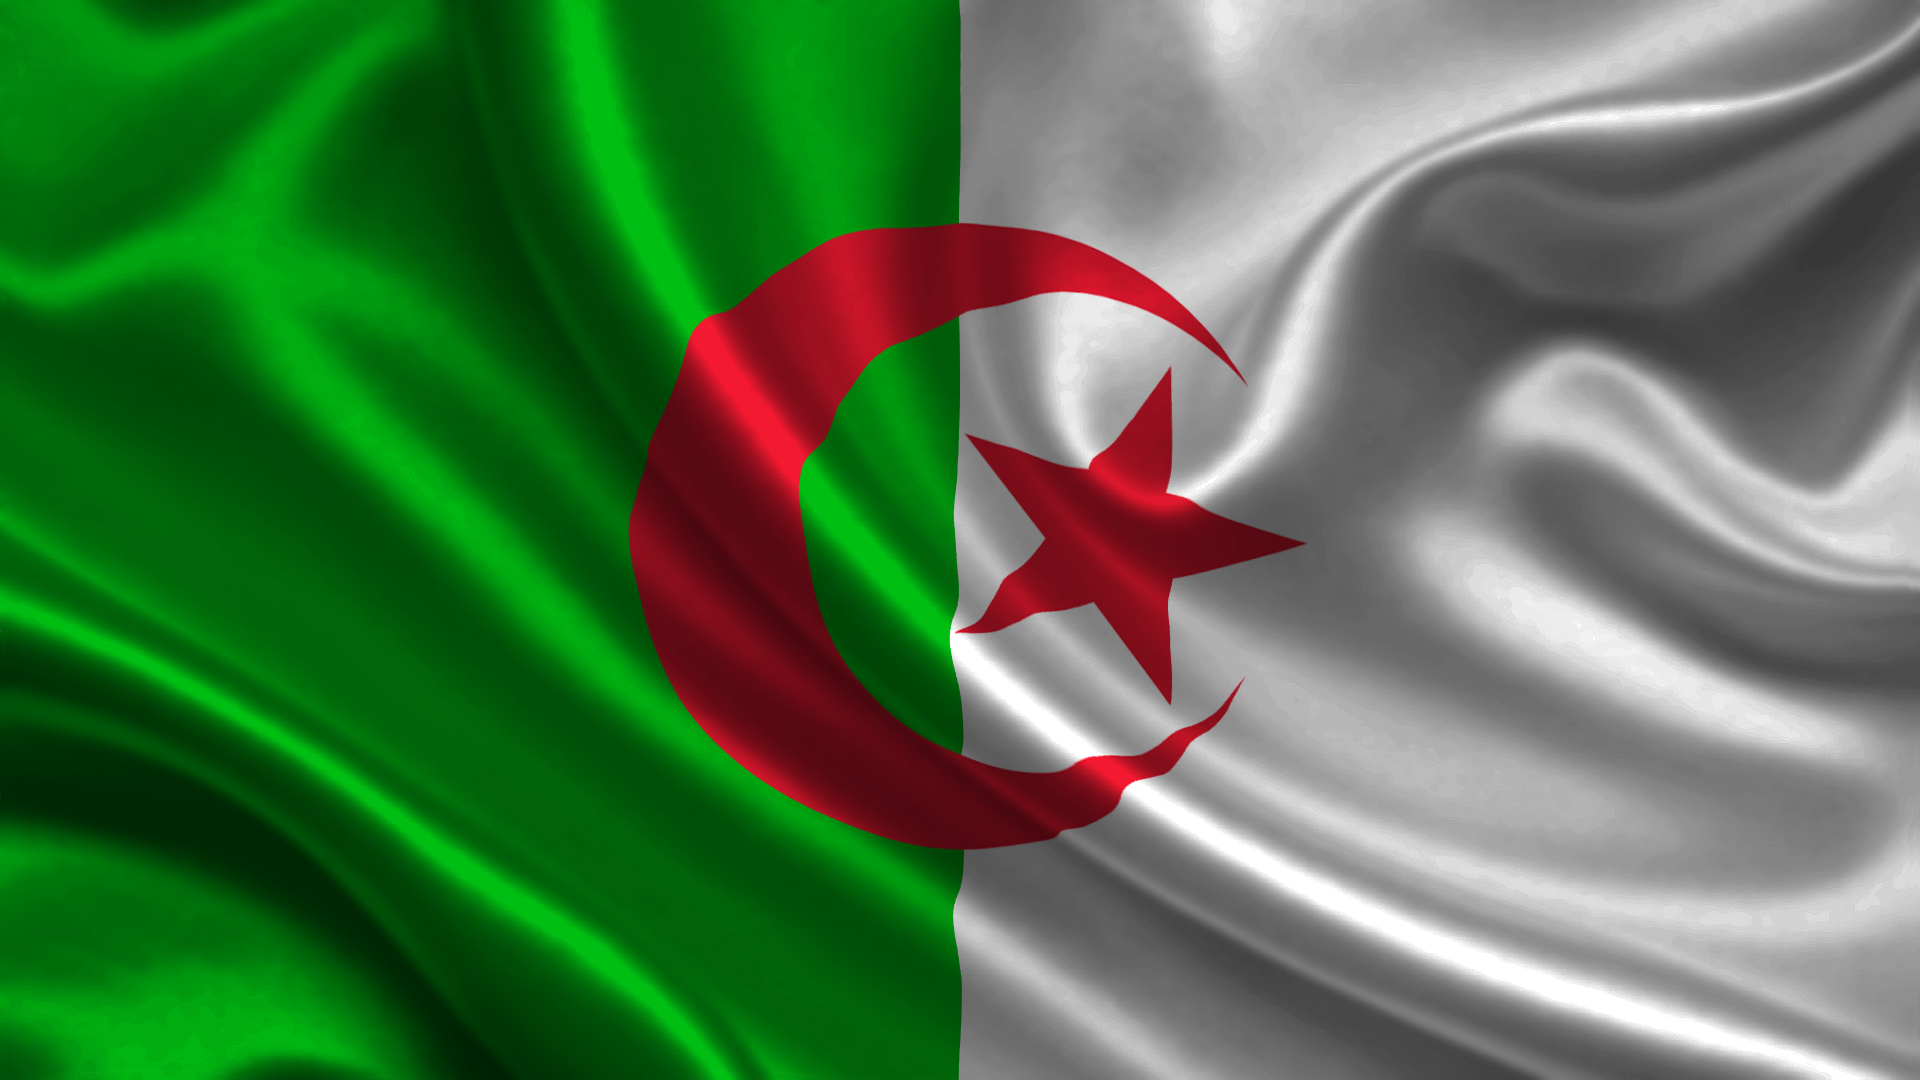 صور علم الجزائر رمزيات وخلفيات العلم الجزائري  ميكساتك